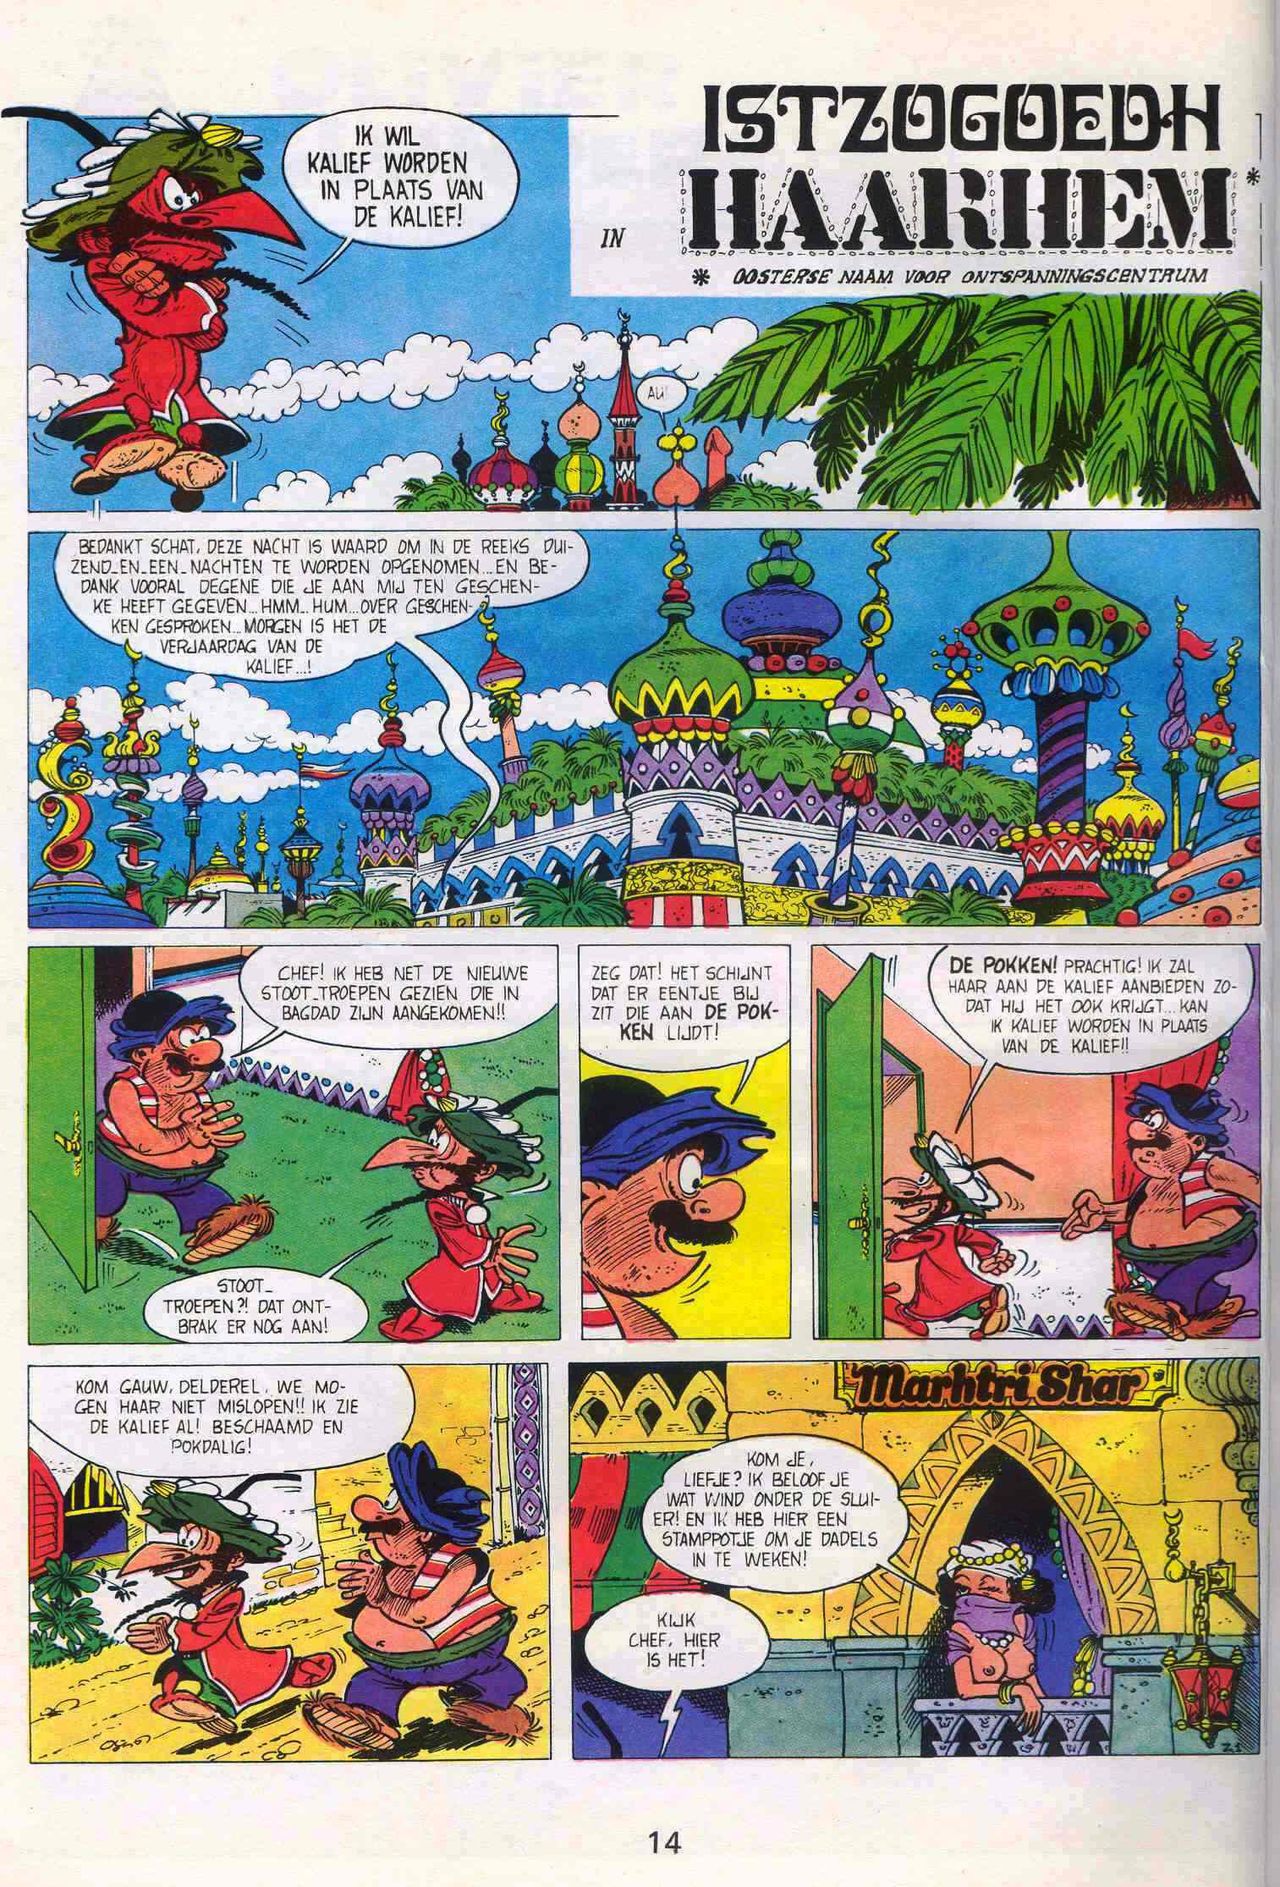 Strip-Tease - 01 - Een Vrolijke Parodie Op Bekende Striphelden (Dutch) Een driedelige serie van Roger Brunel 15